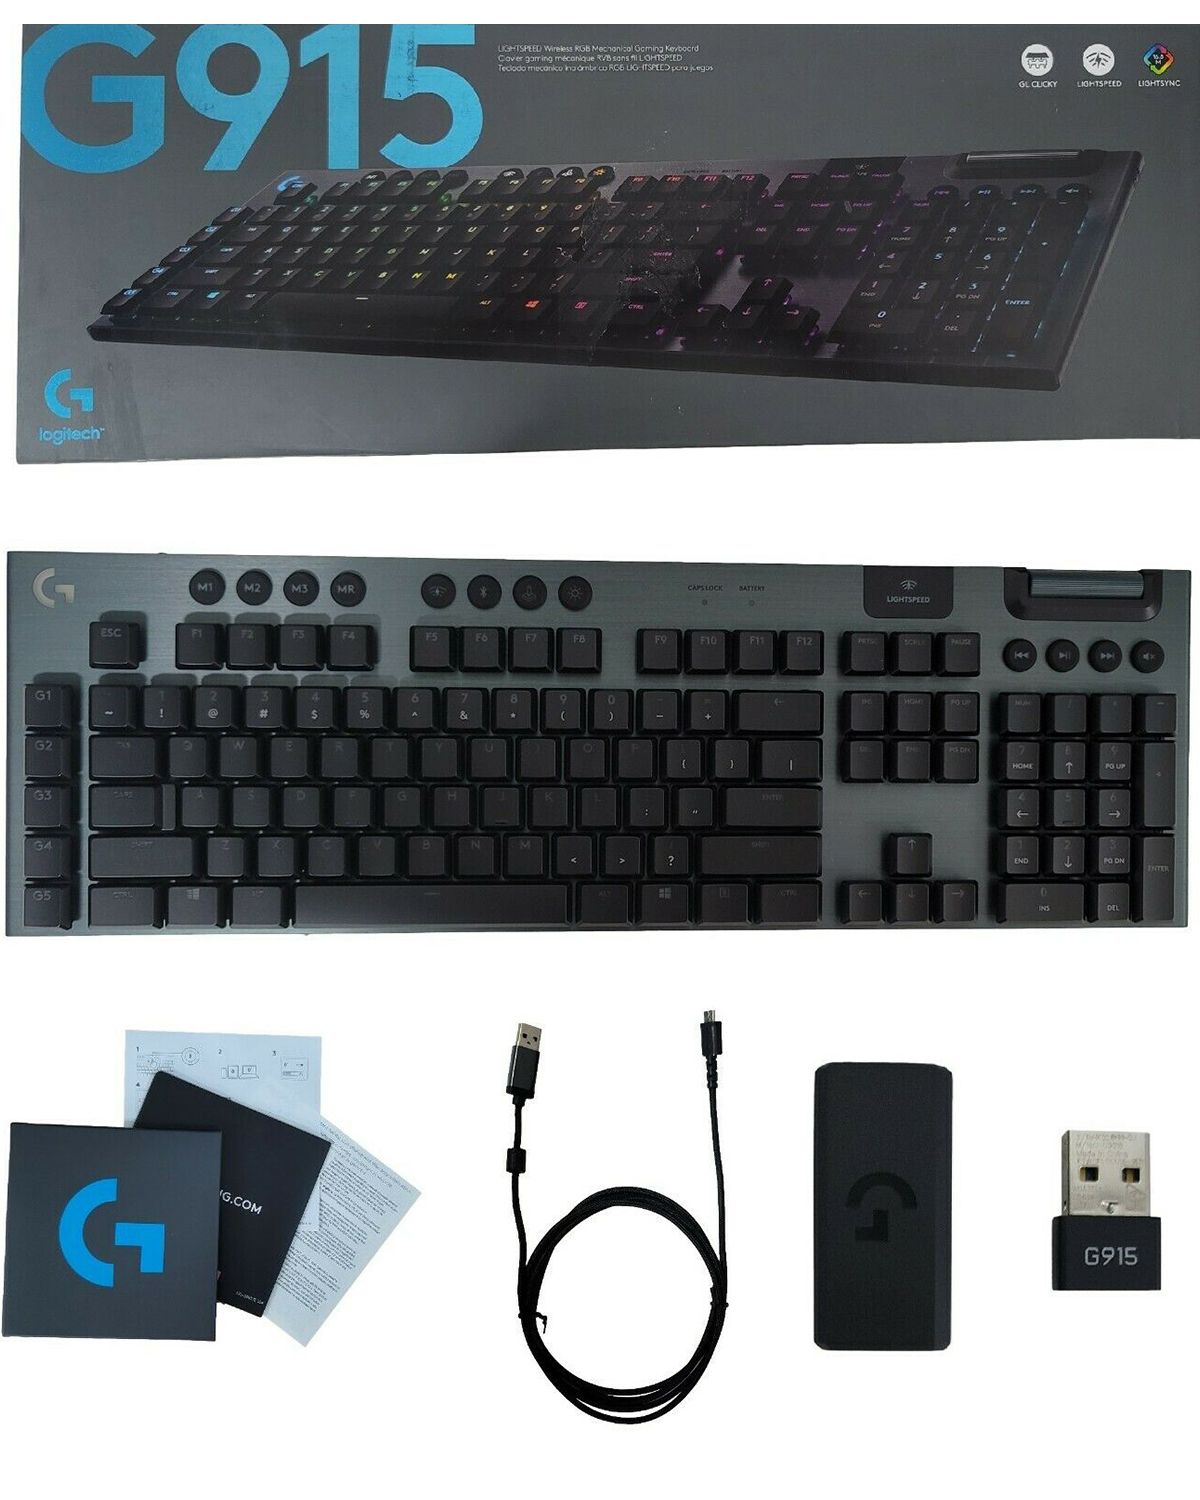 Logitech G915 LIGHTSPEED Wireless Keyboard UNBOXING 